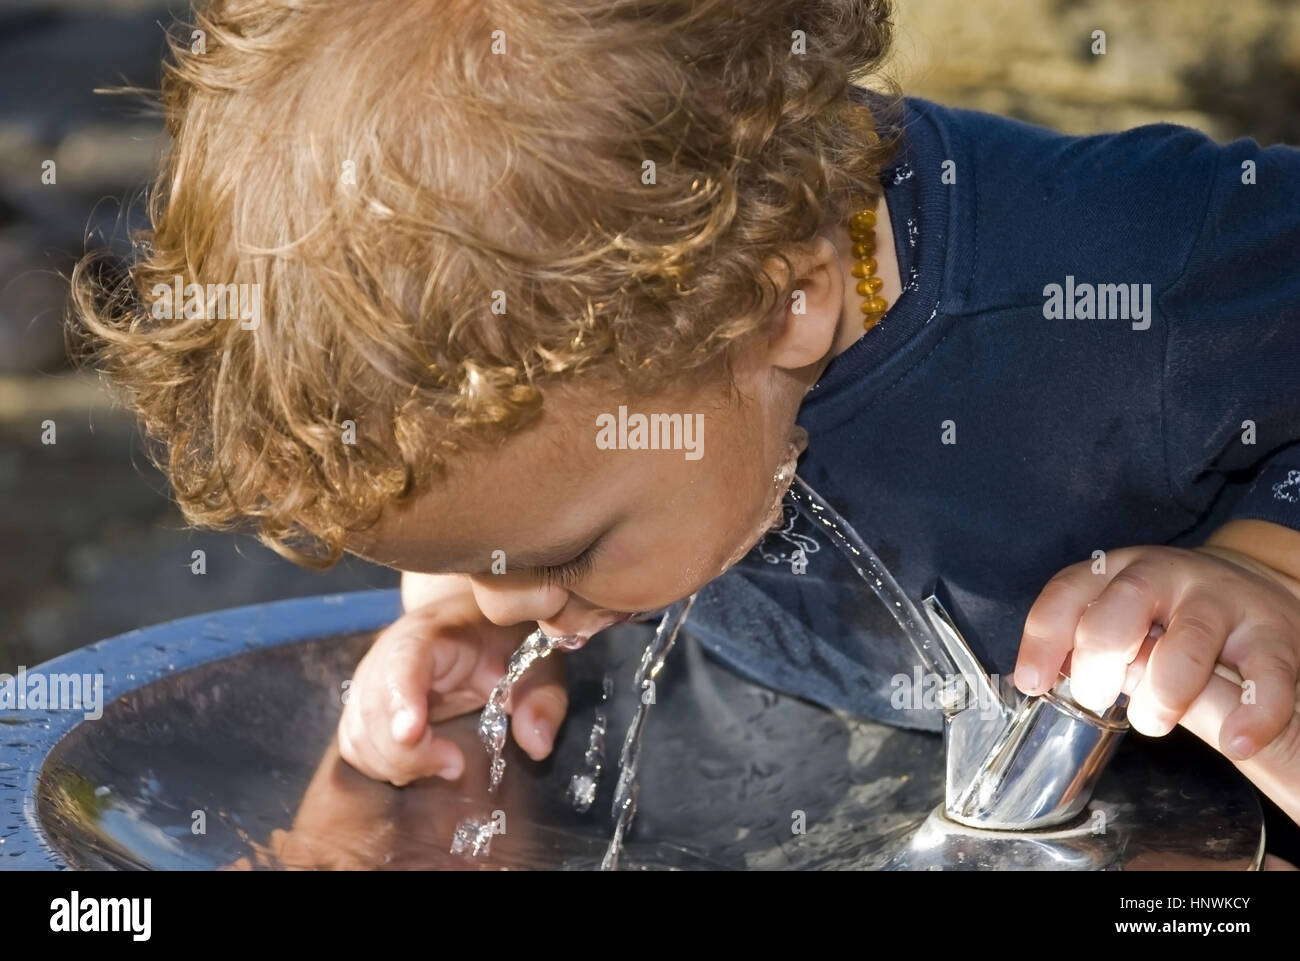 Model release, Kleiner Junge trinkt Wasser aus Wasserleitung - child drinks water from water tap Stock Photo